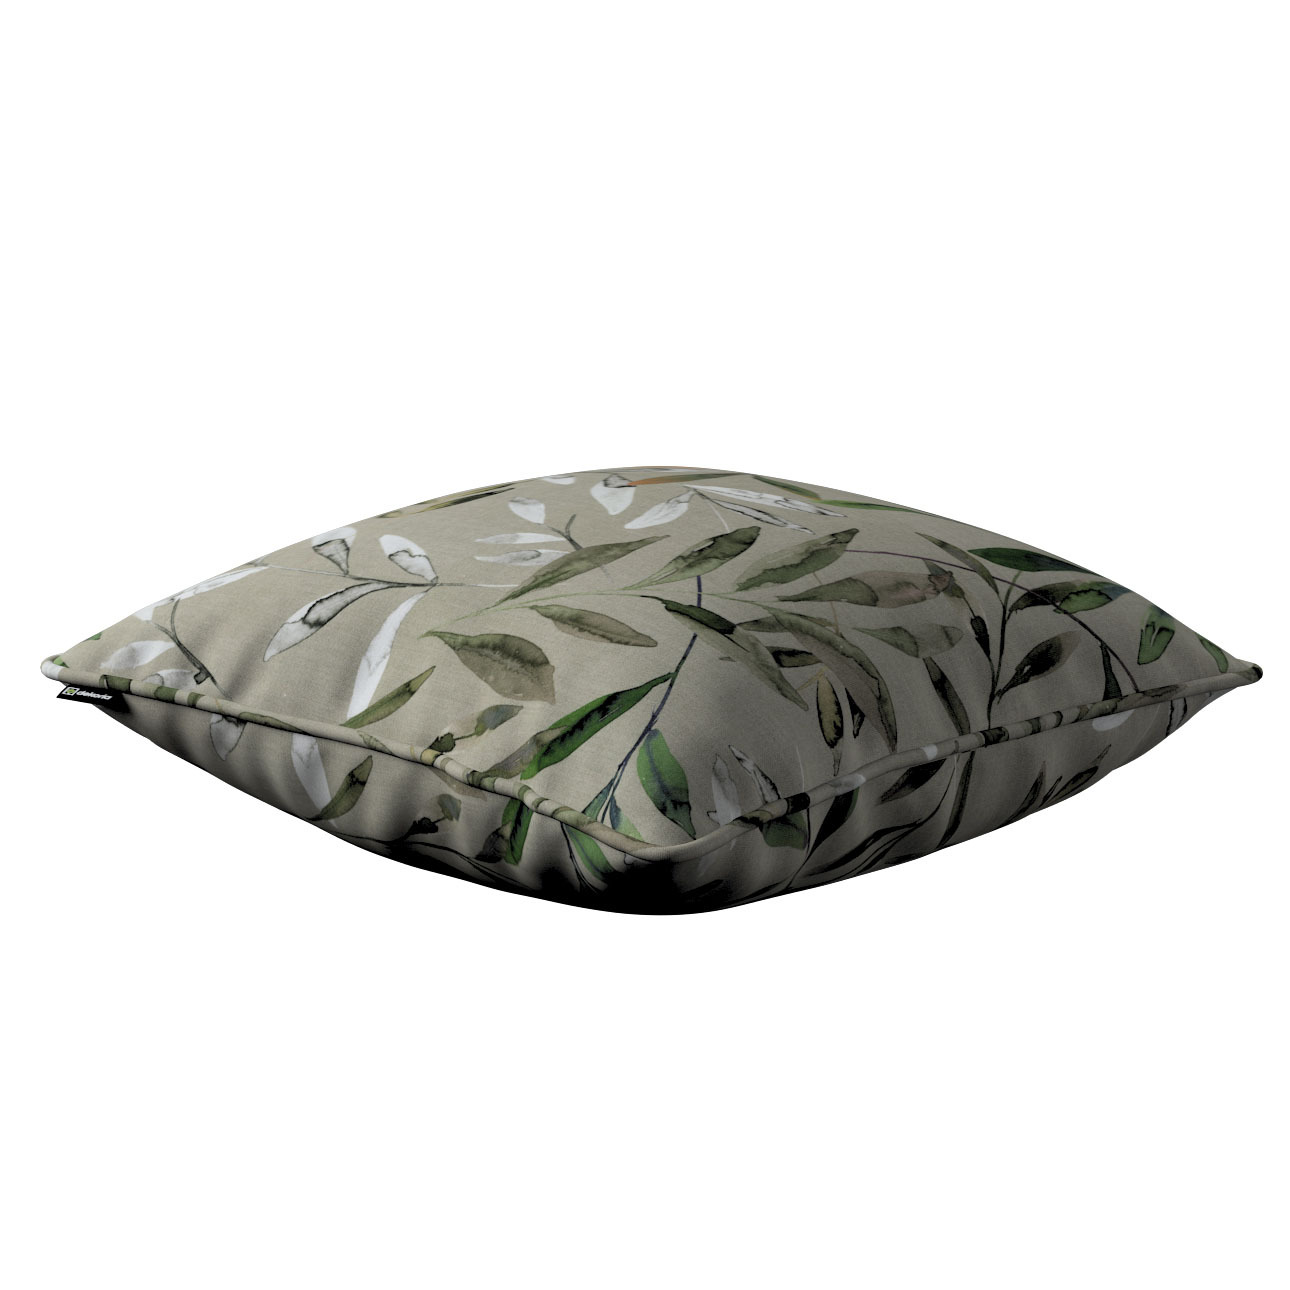 Kissenhülle Gabi mit Paspel, grau-grün, 60 x 60 cm, Eden (144-23) günstig online kaufen